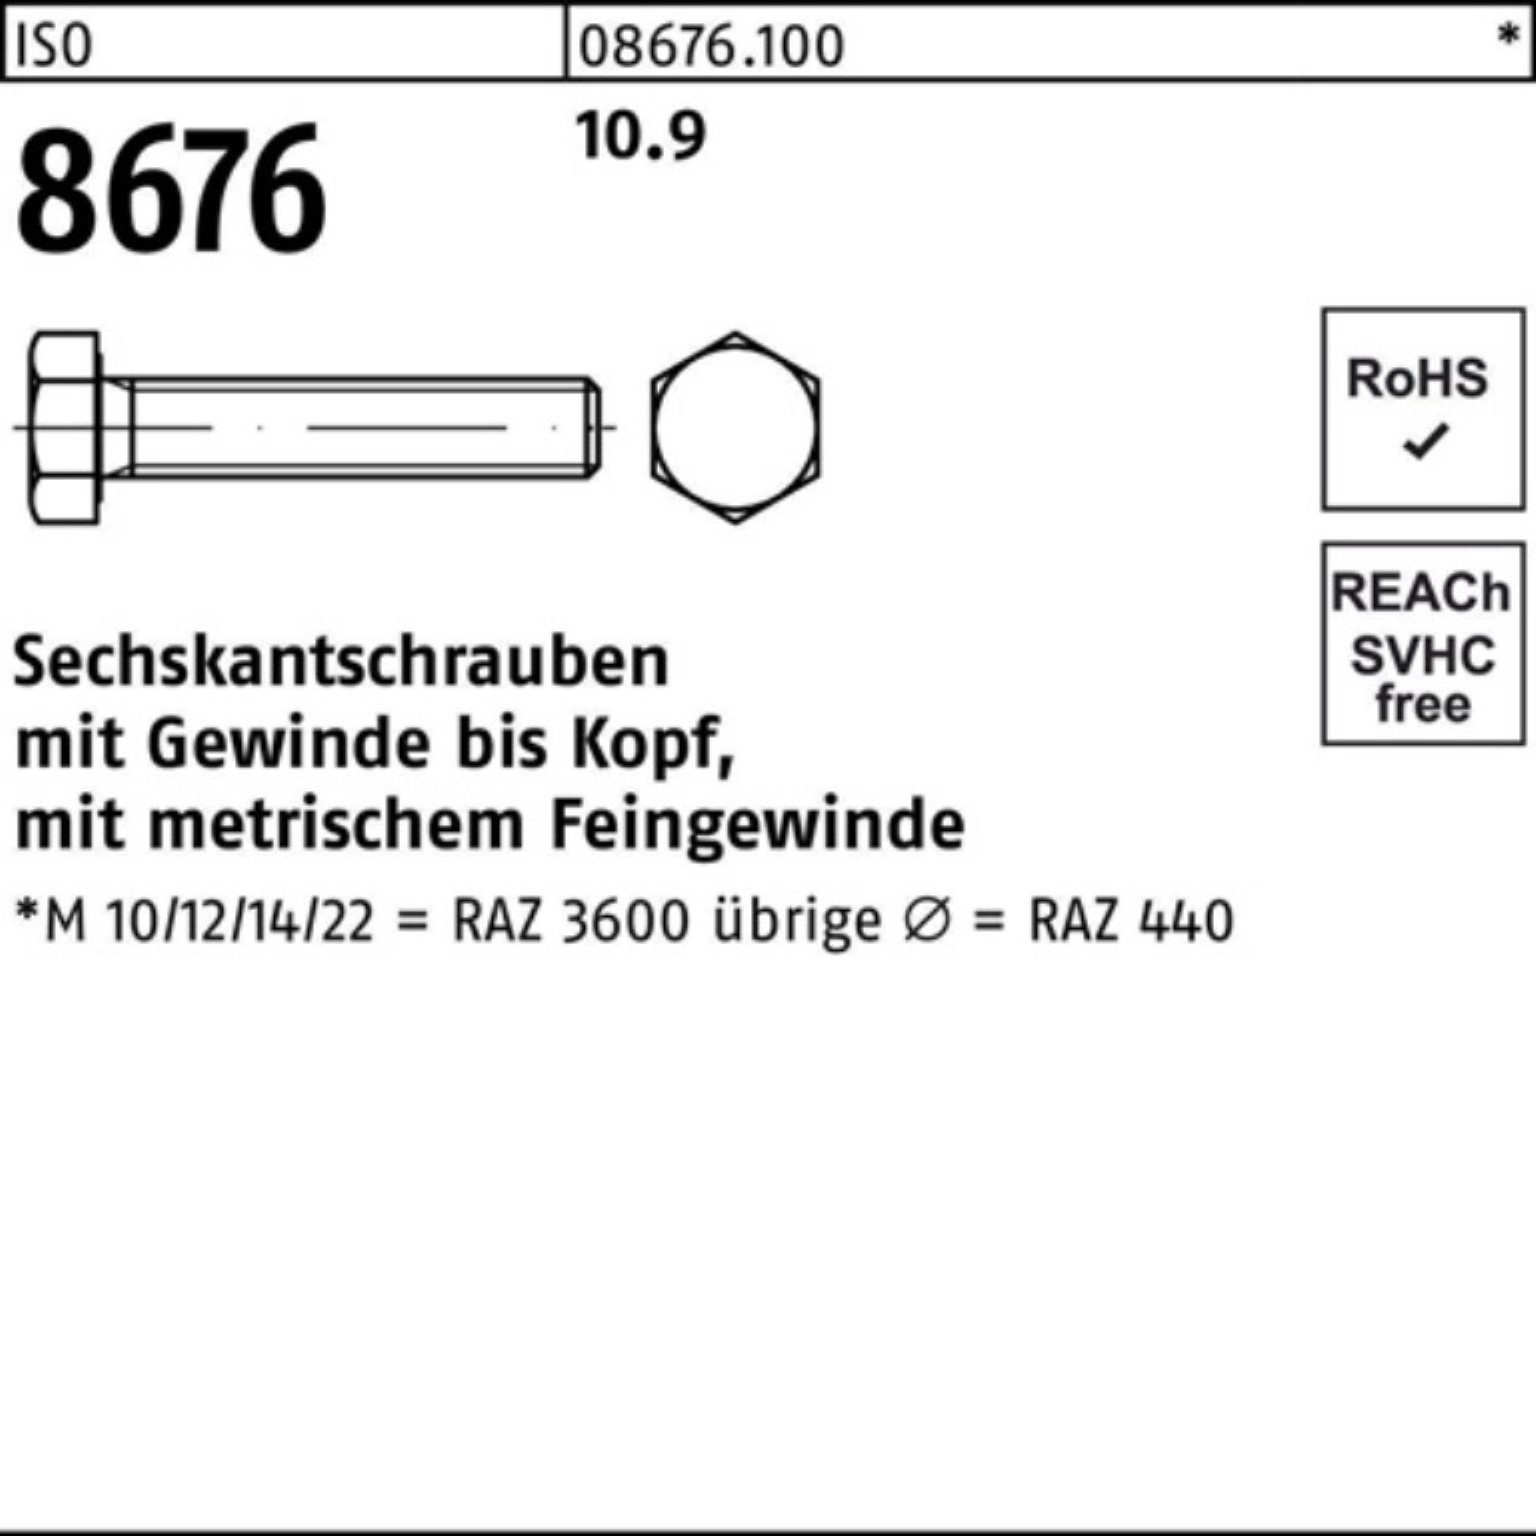 Sechskantschraube M20x1,5x100 8676 Reyher VG ISO Pack 10.9 IS 25 Sechskantschraube 100er Stück